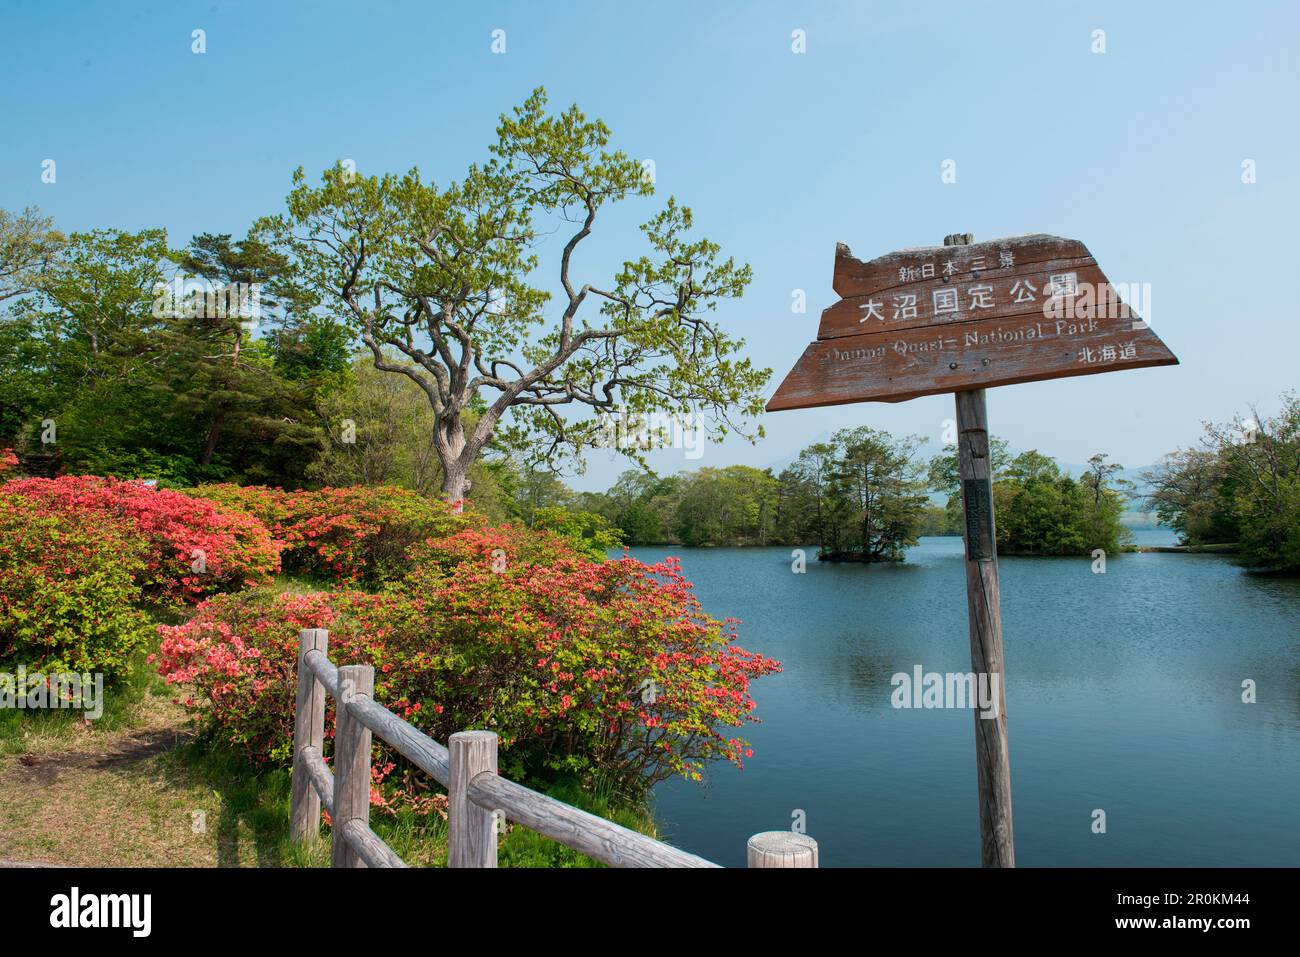 Scena idilliaca con alberi, azalee fiorite e acqua nel Parco Nazionale di Onuma-quasi, Parco Nazionale di Onuma-quasi, Hakodate, Hokkaido, Giappone, Asia Foto Stock